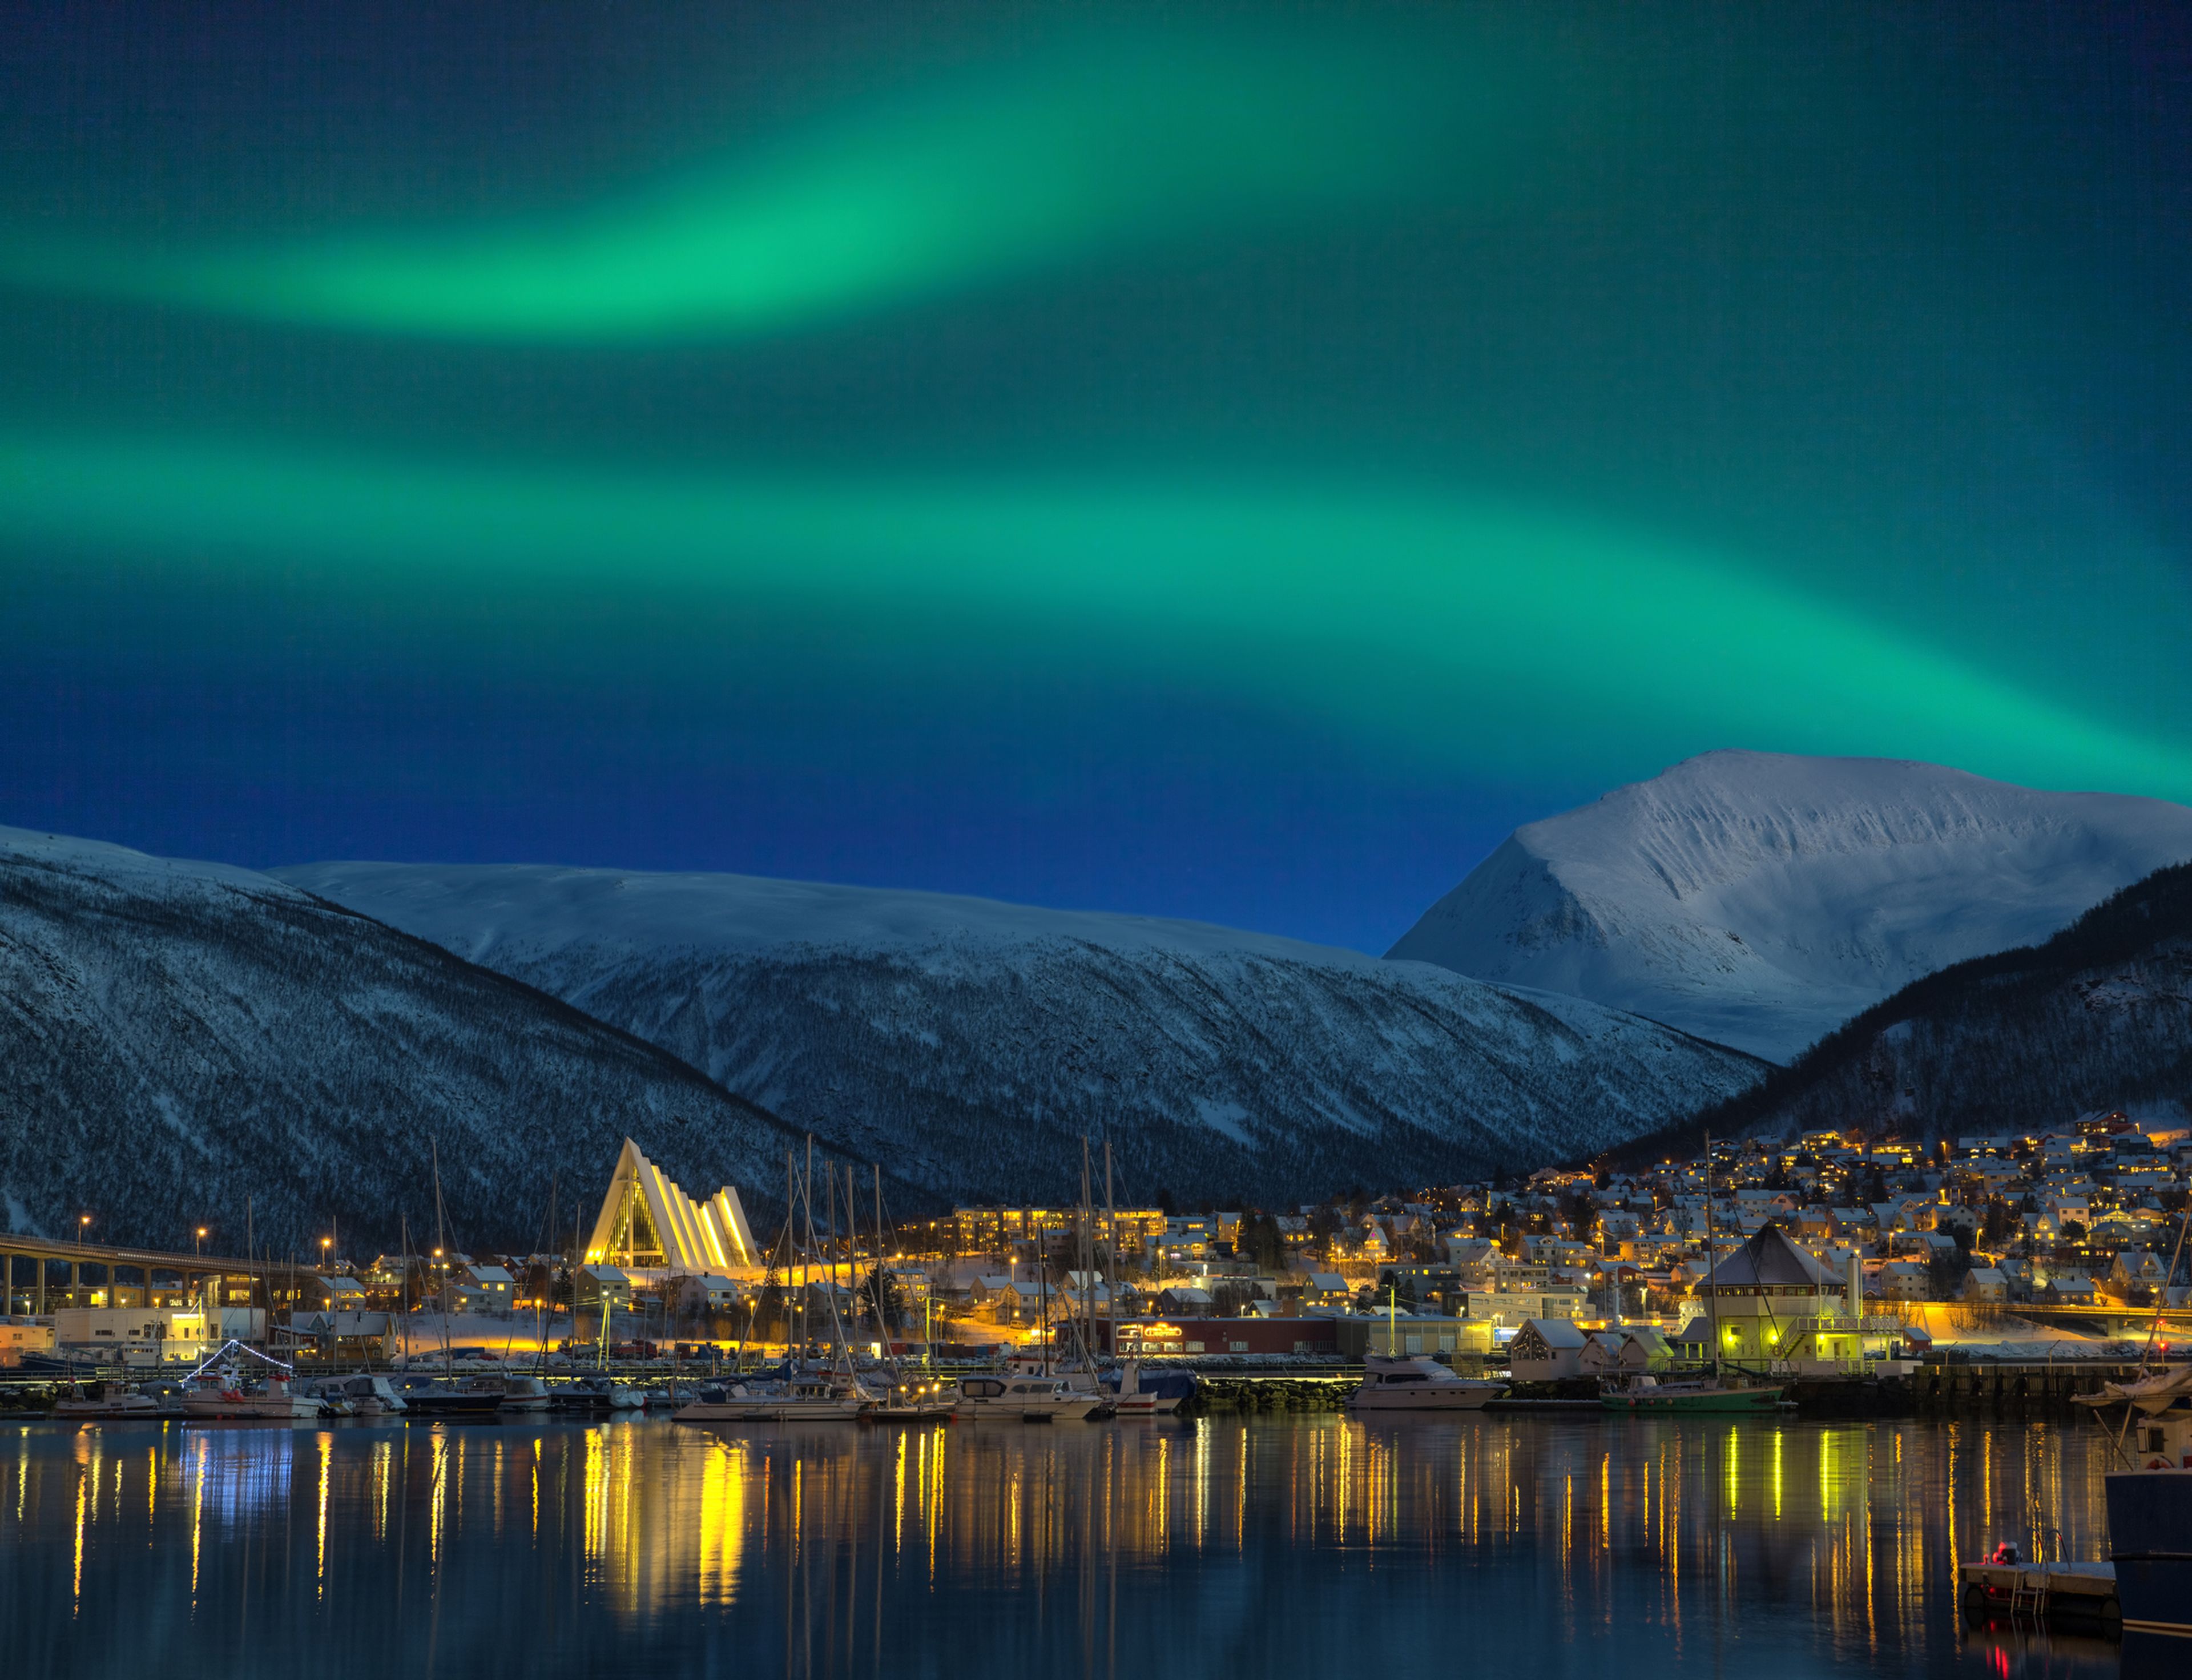 La ciudad de Tromso por la noche iluminada por una aurora boreal.